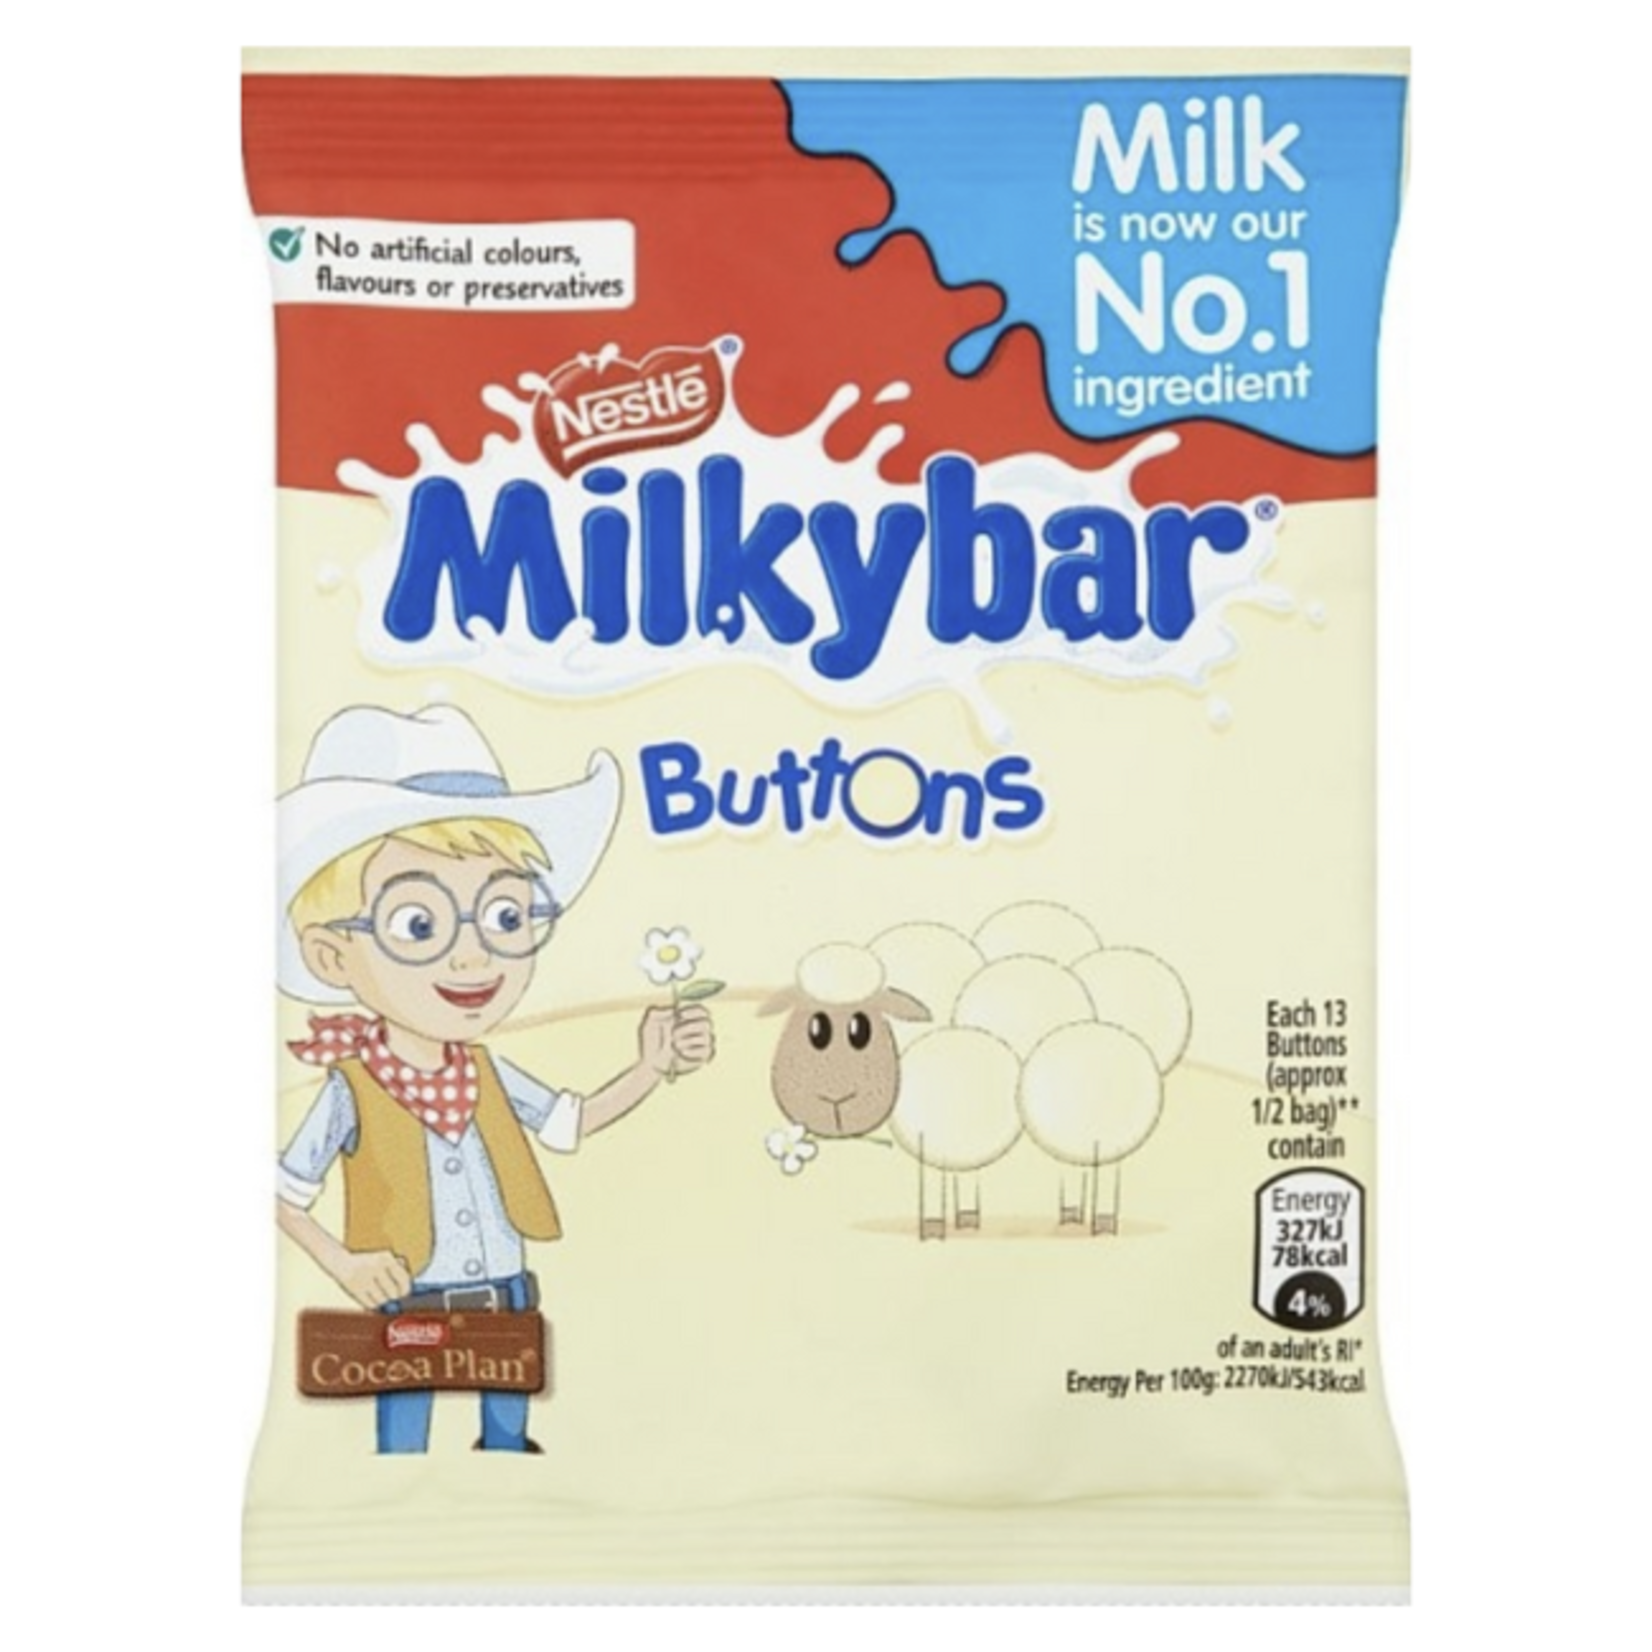 MilkyBar MilkyBar Buttons 30g (1.1oz)